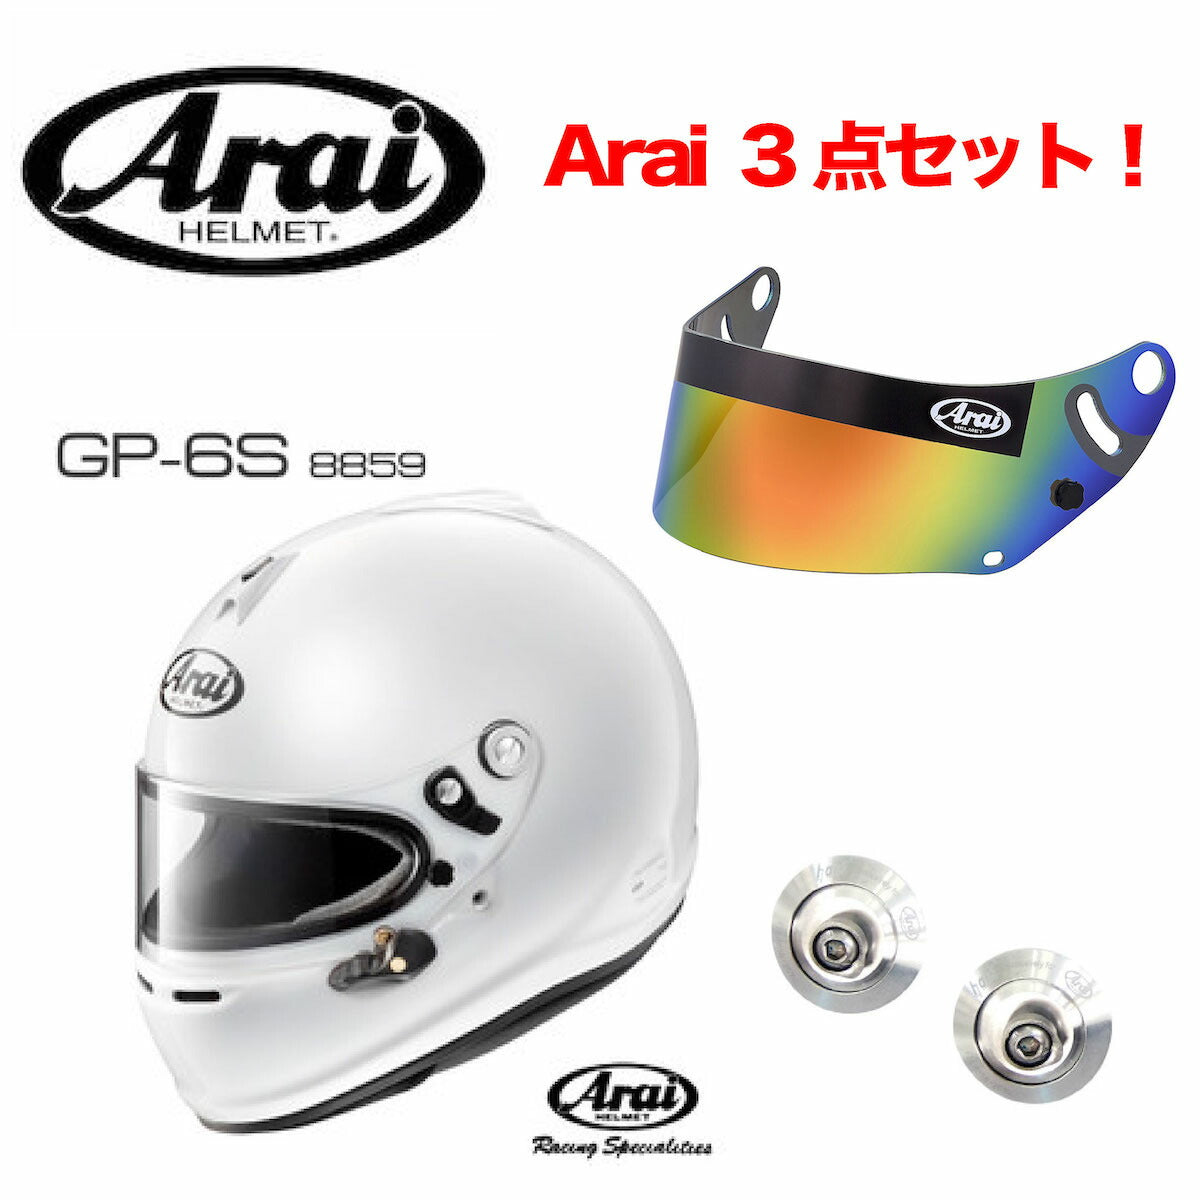 Arai GP-6S フルフェイス ヘルメット